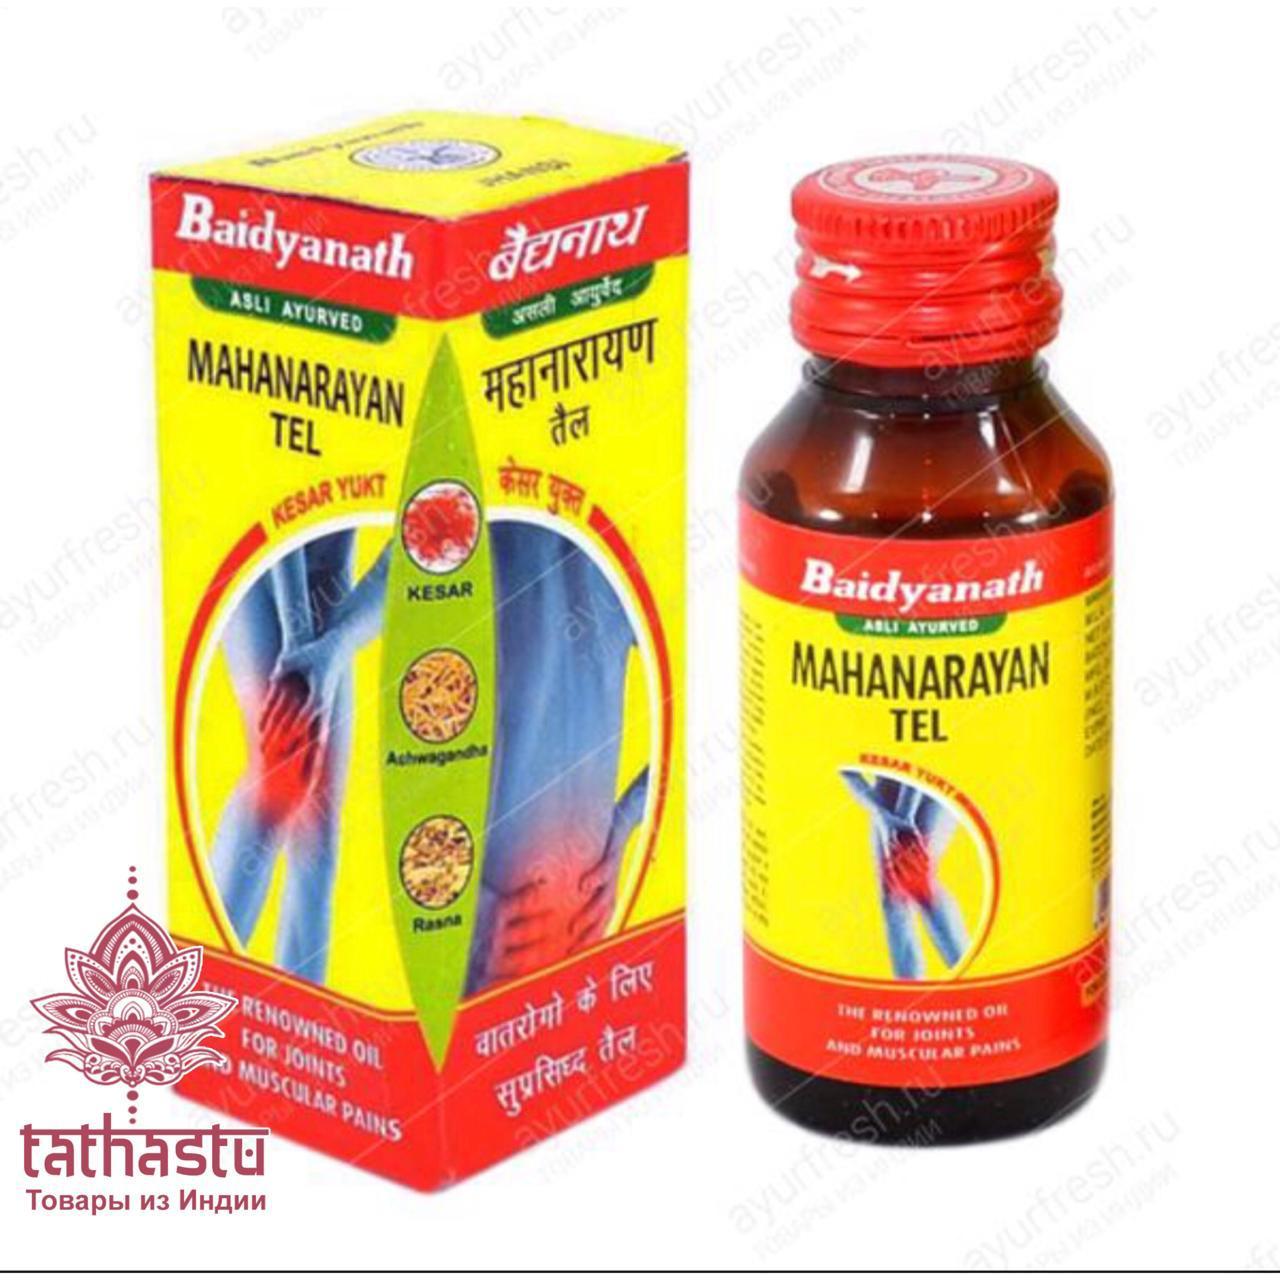 Лечебное масло Mahanarayan Tel индийской фирмы Baidyanath . Tathastu товары и индии